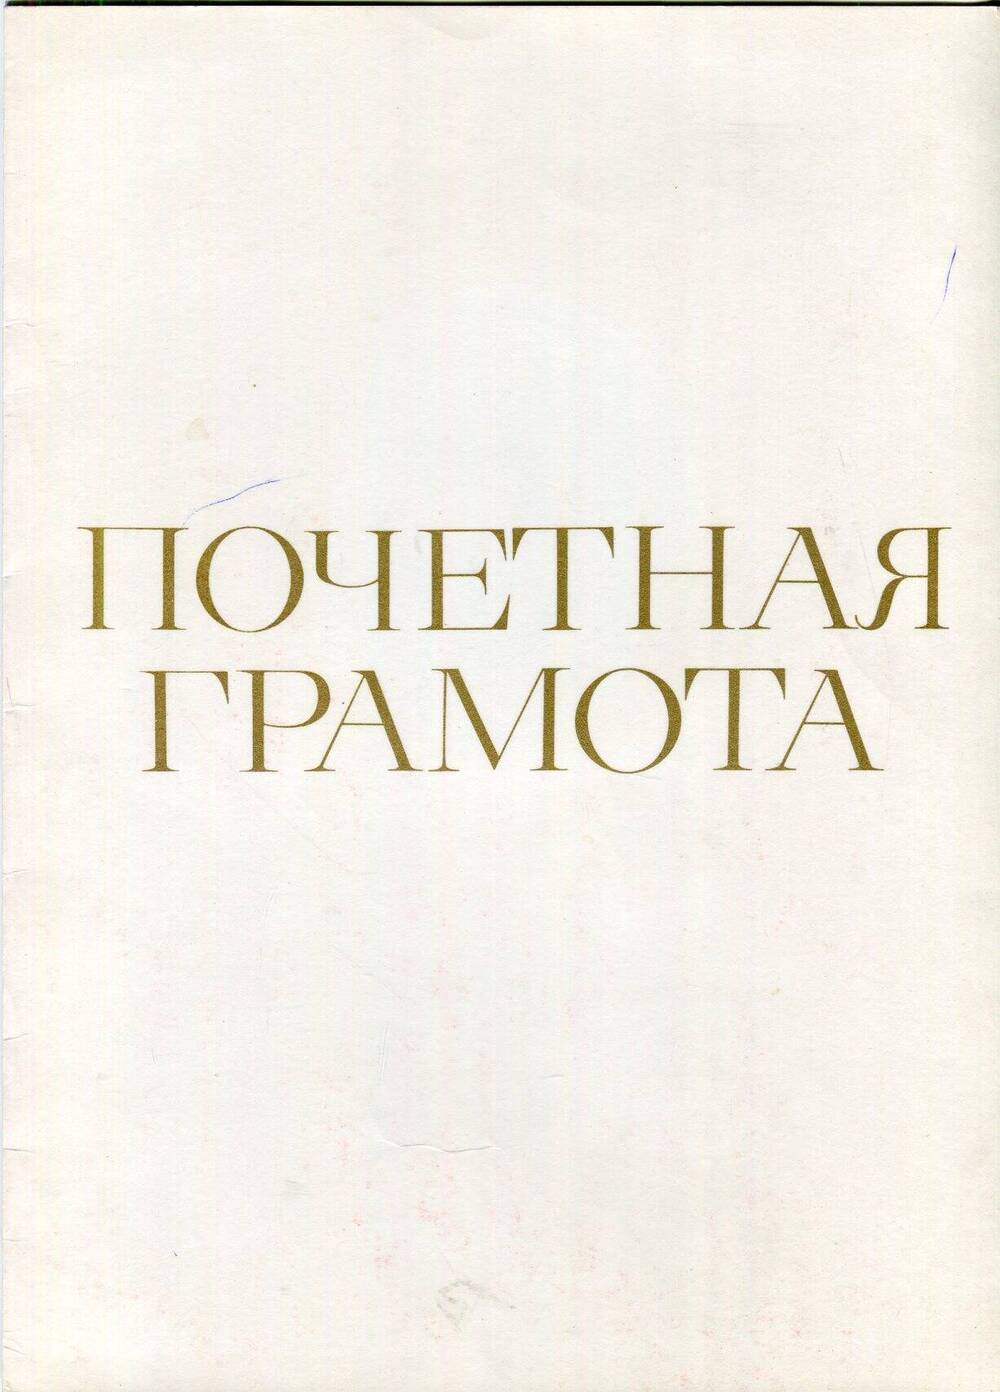 Почетная грамота Ендовицкого Ивана Дмитриевича, председателя Городищенского поссовета, за активное участие в проведении традиционной осенней ярмарки 1980 года.